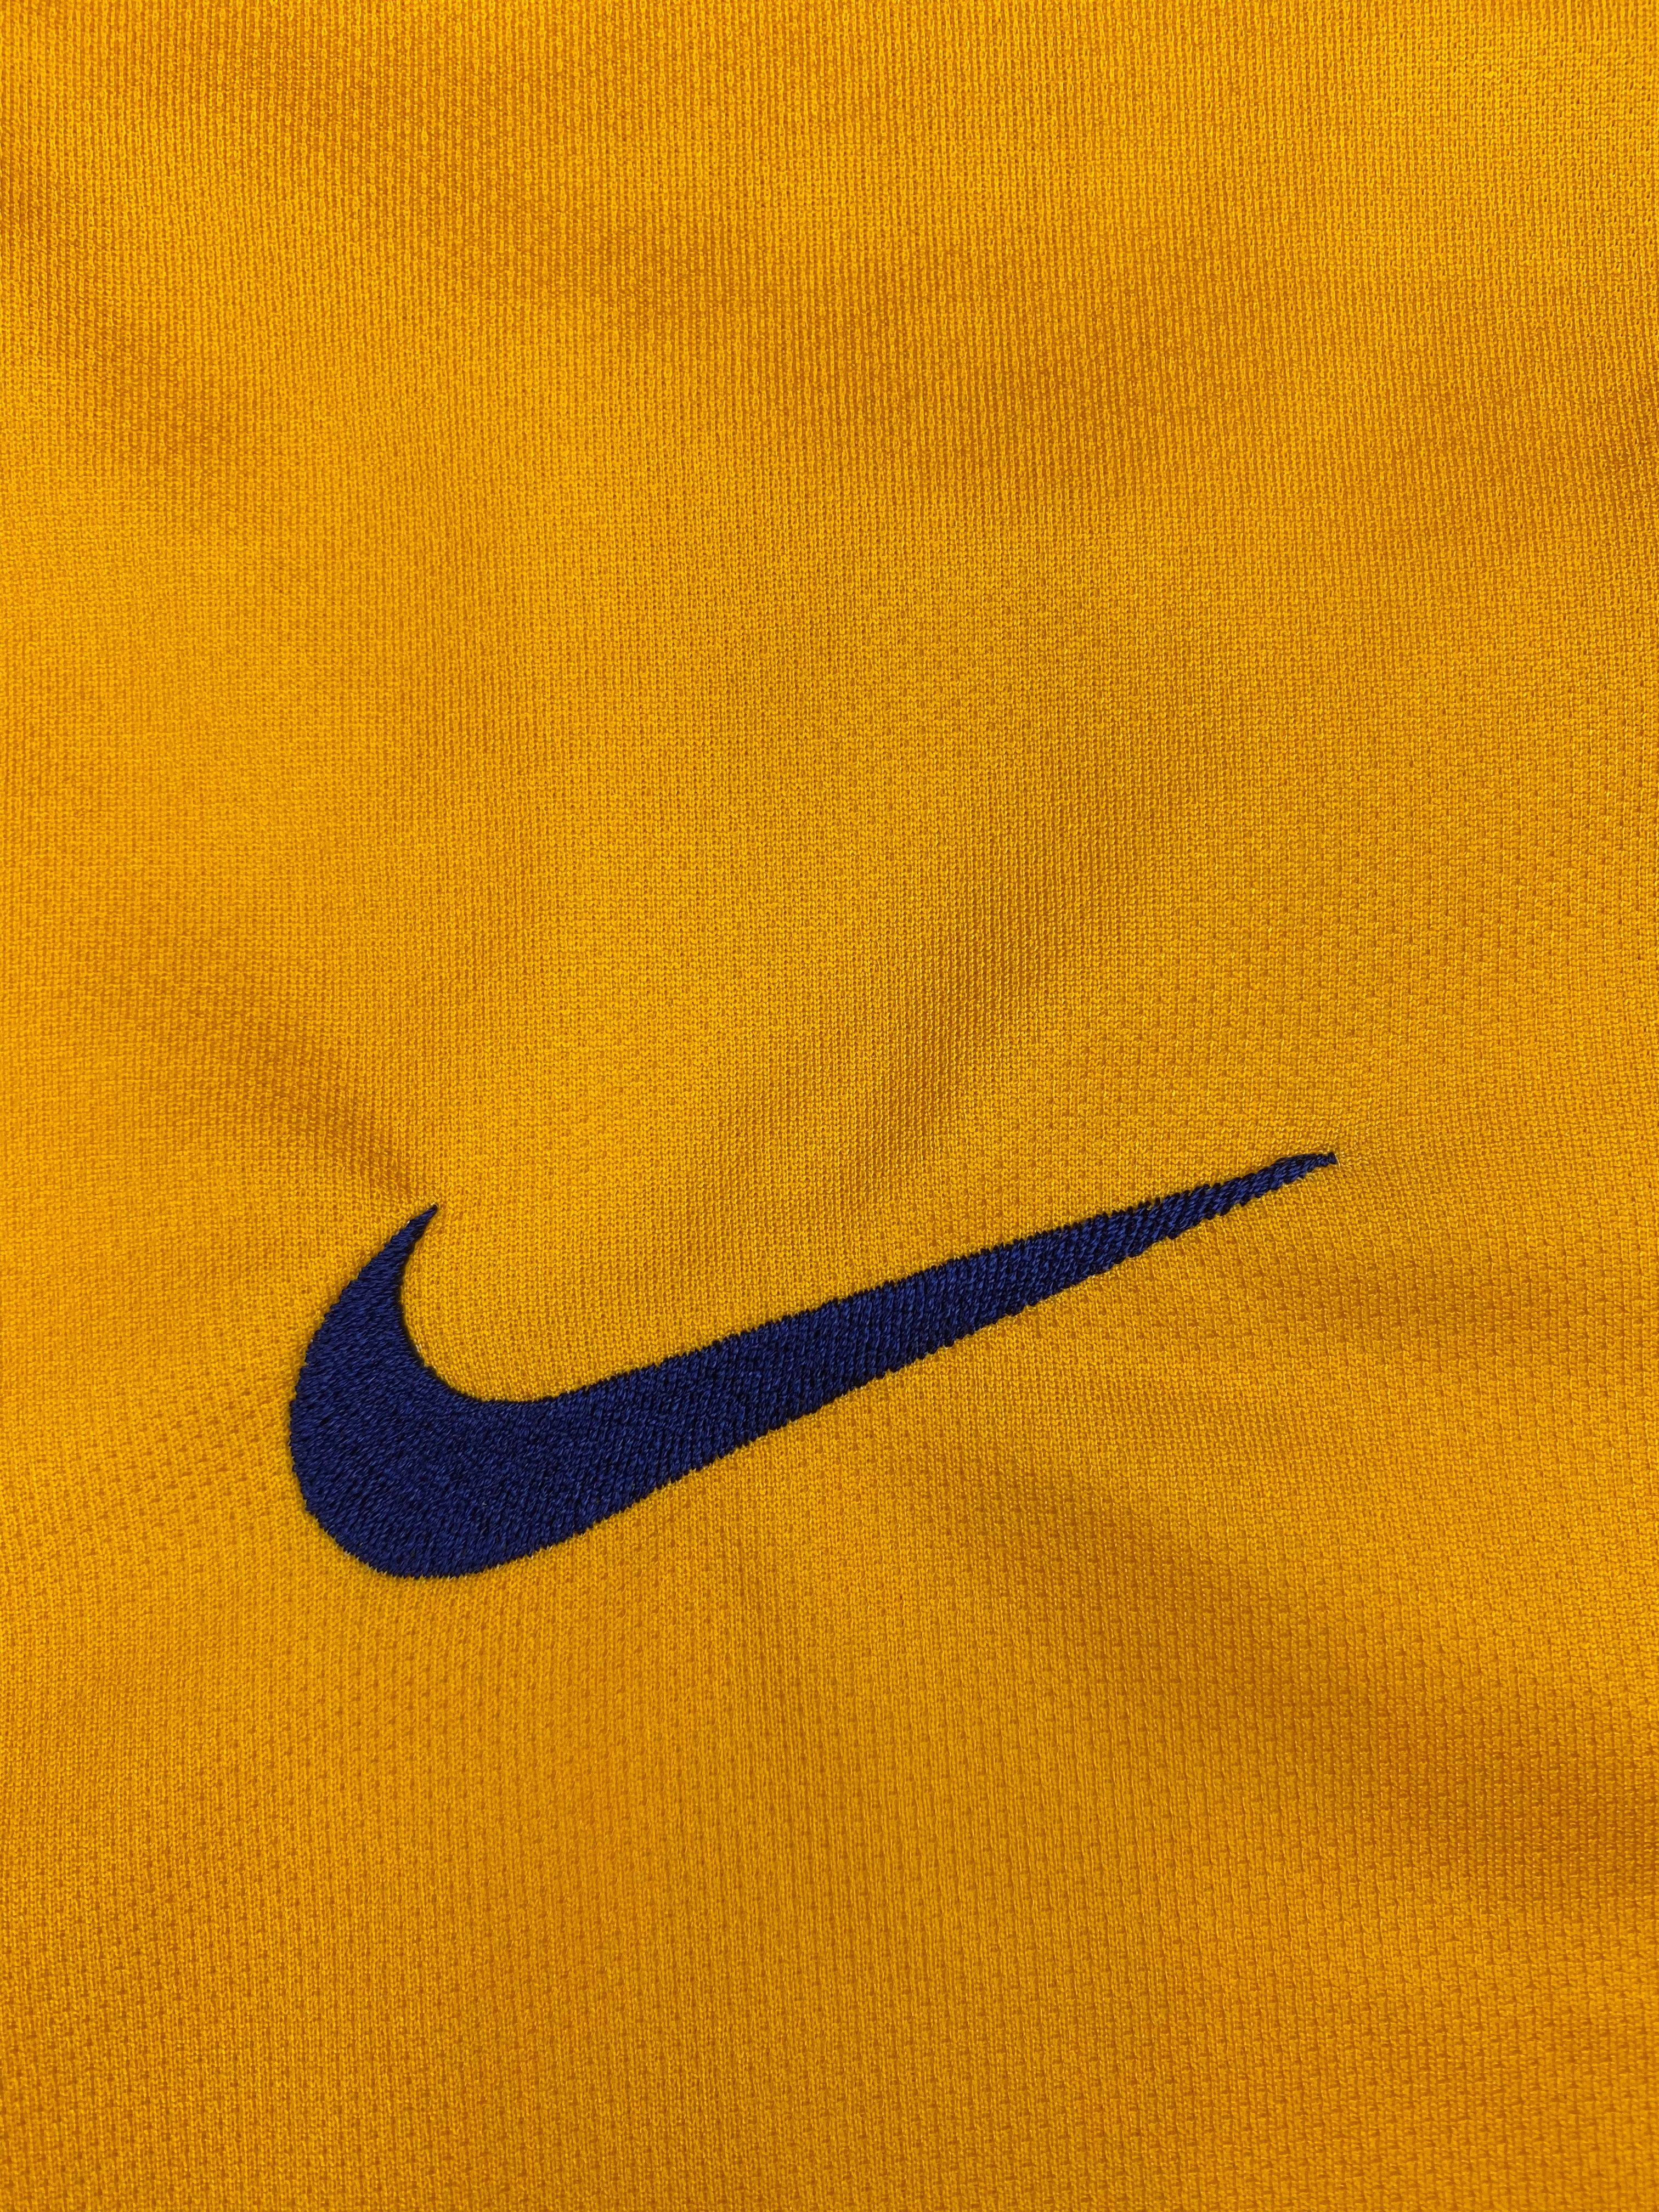 2015/16 Barcelona Away Shirt (XL) 9/10